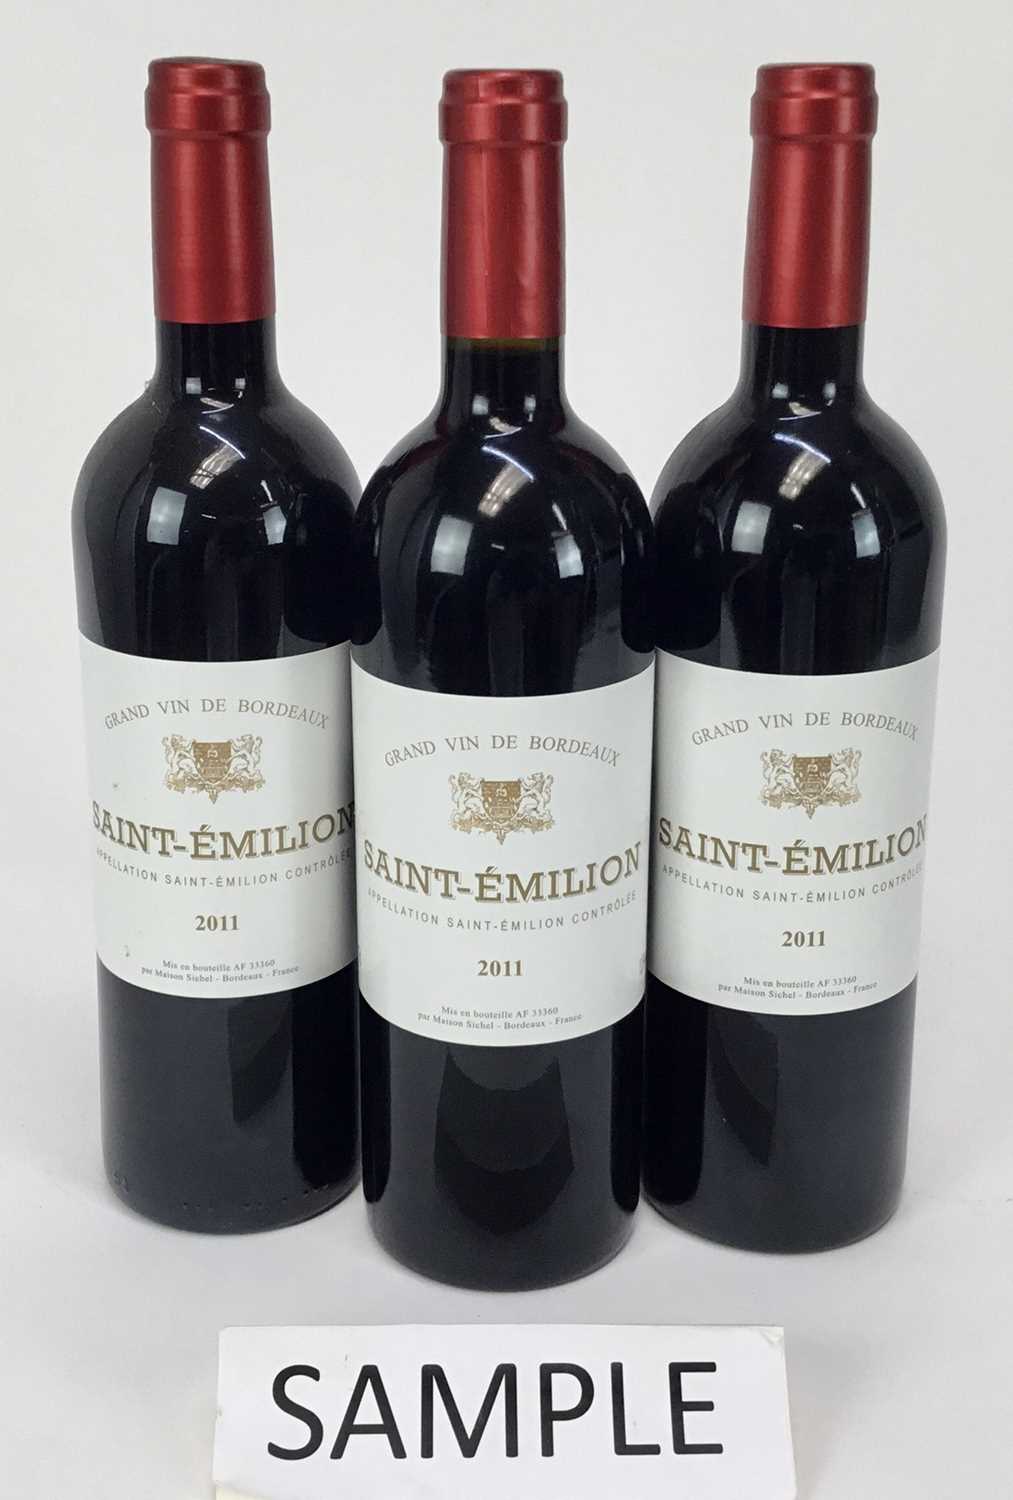 Lot 10 - Wine - twelve bottles, Grand Vin De Bordeaux Saint-Emilion 2011